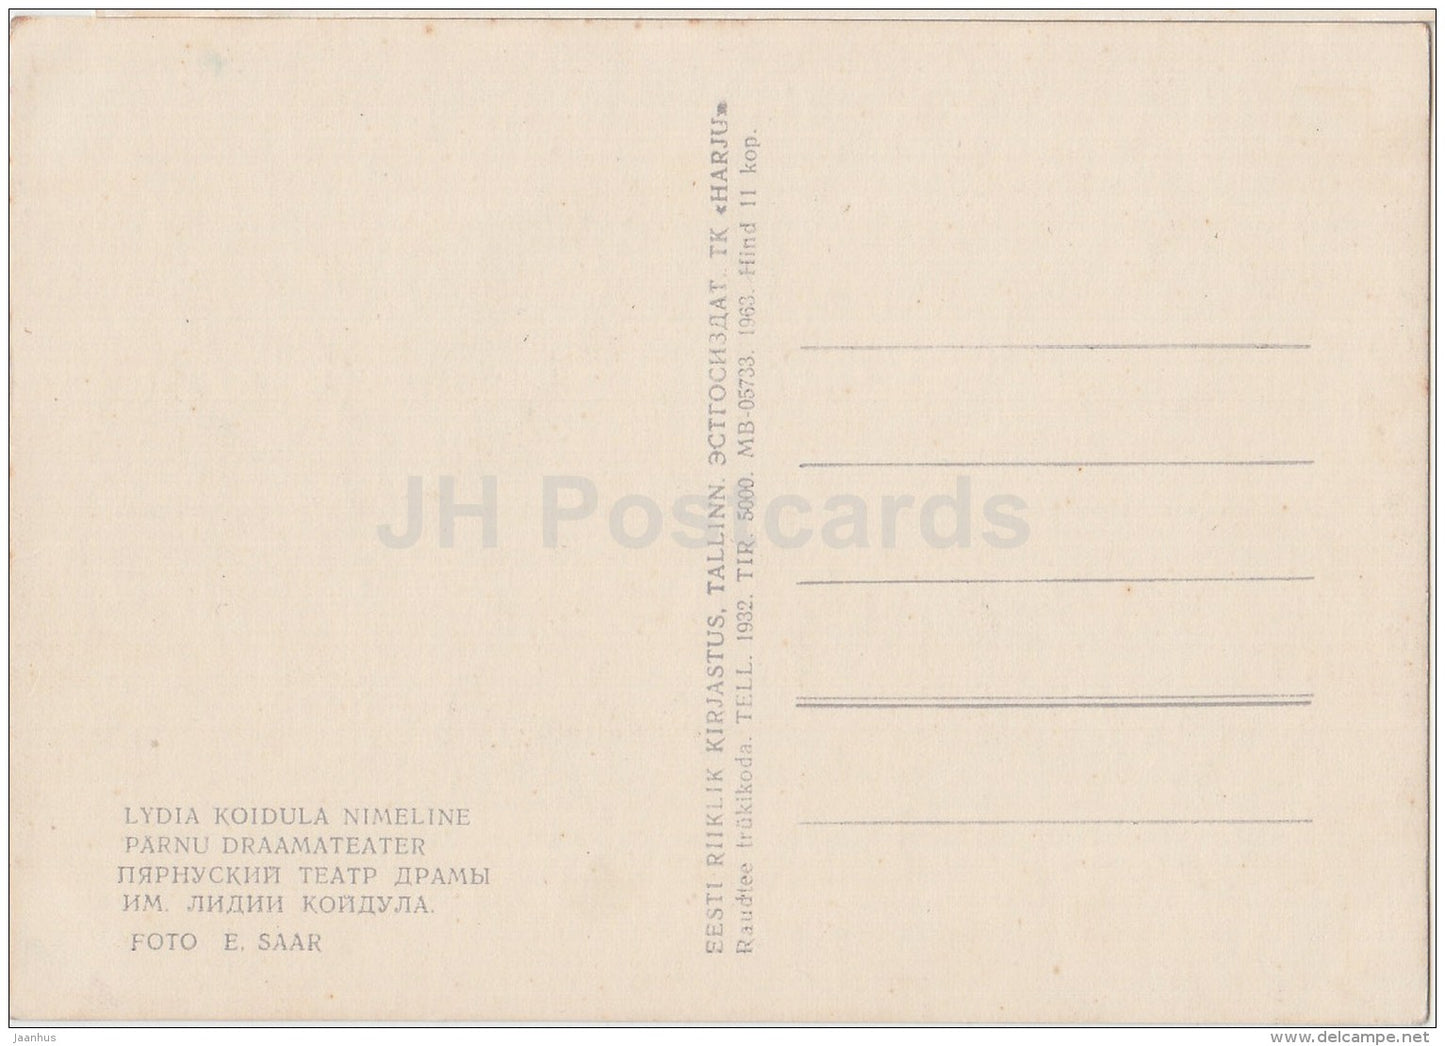 Koidula Drama Theatre - Pärnu - 1963 - Estonia USSR - unused - JH Postcards